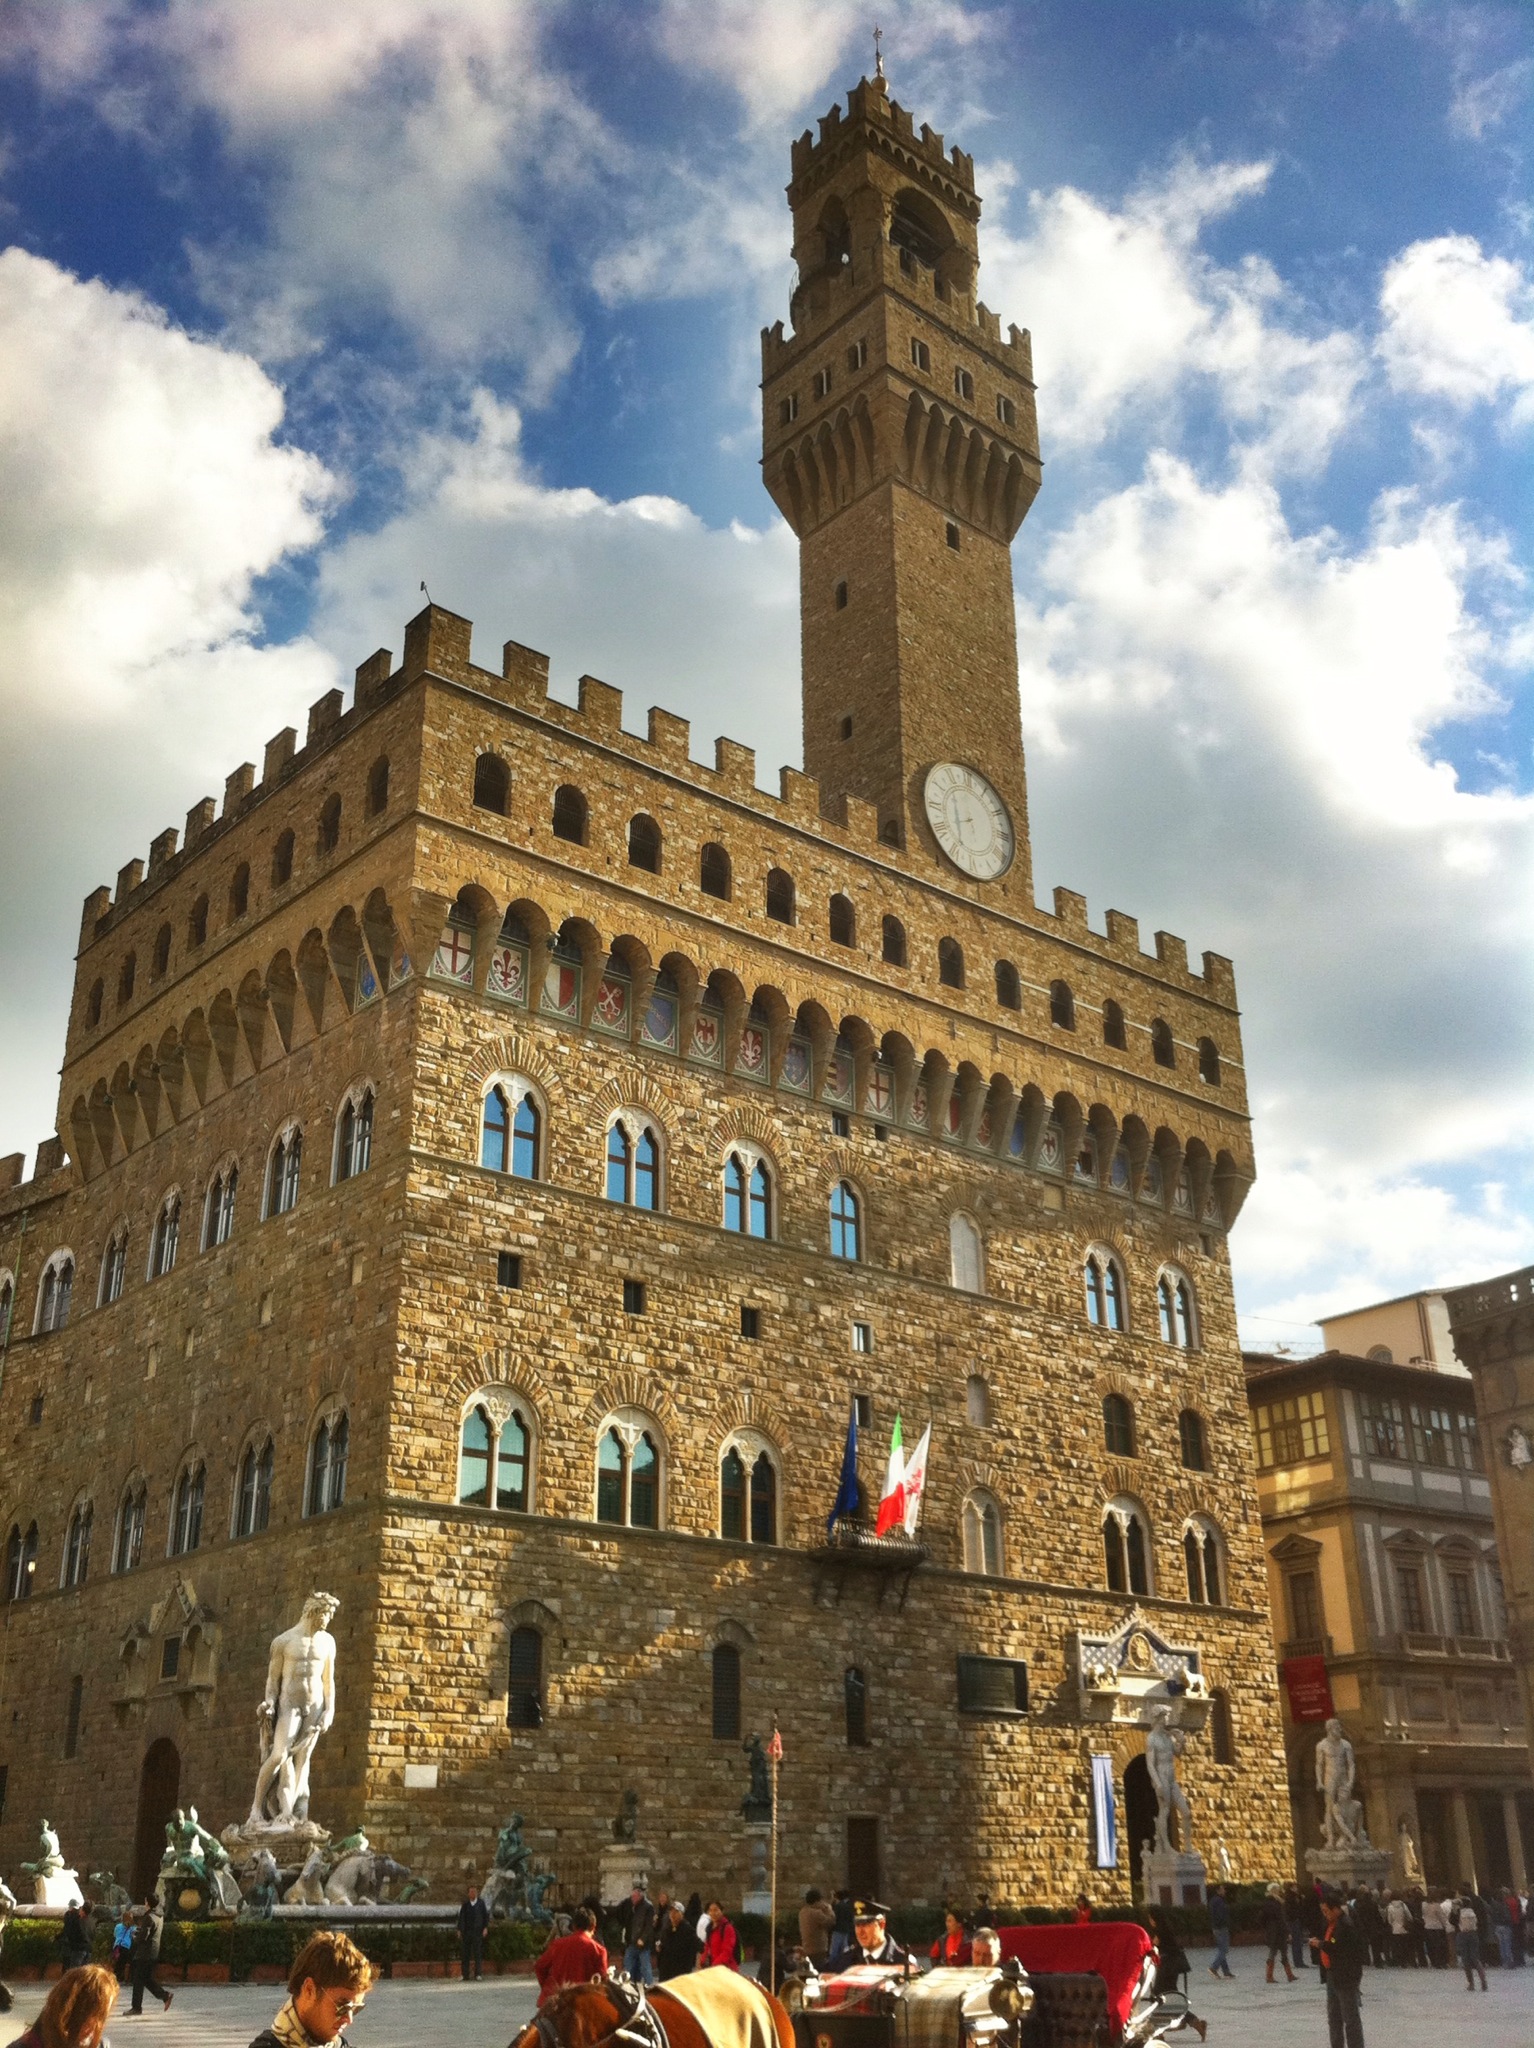 Palazzo Vecchio, Florence â€“ anewscafe.com